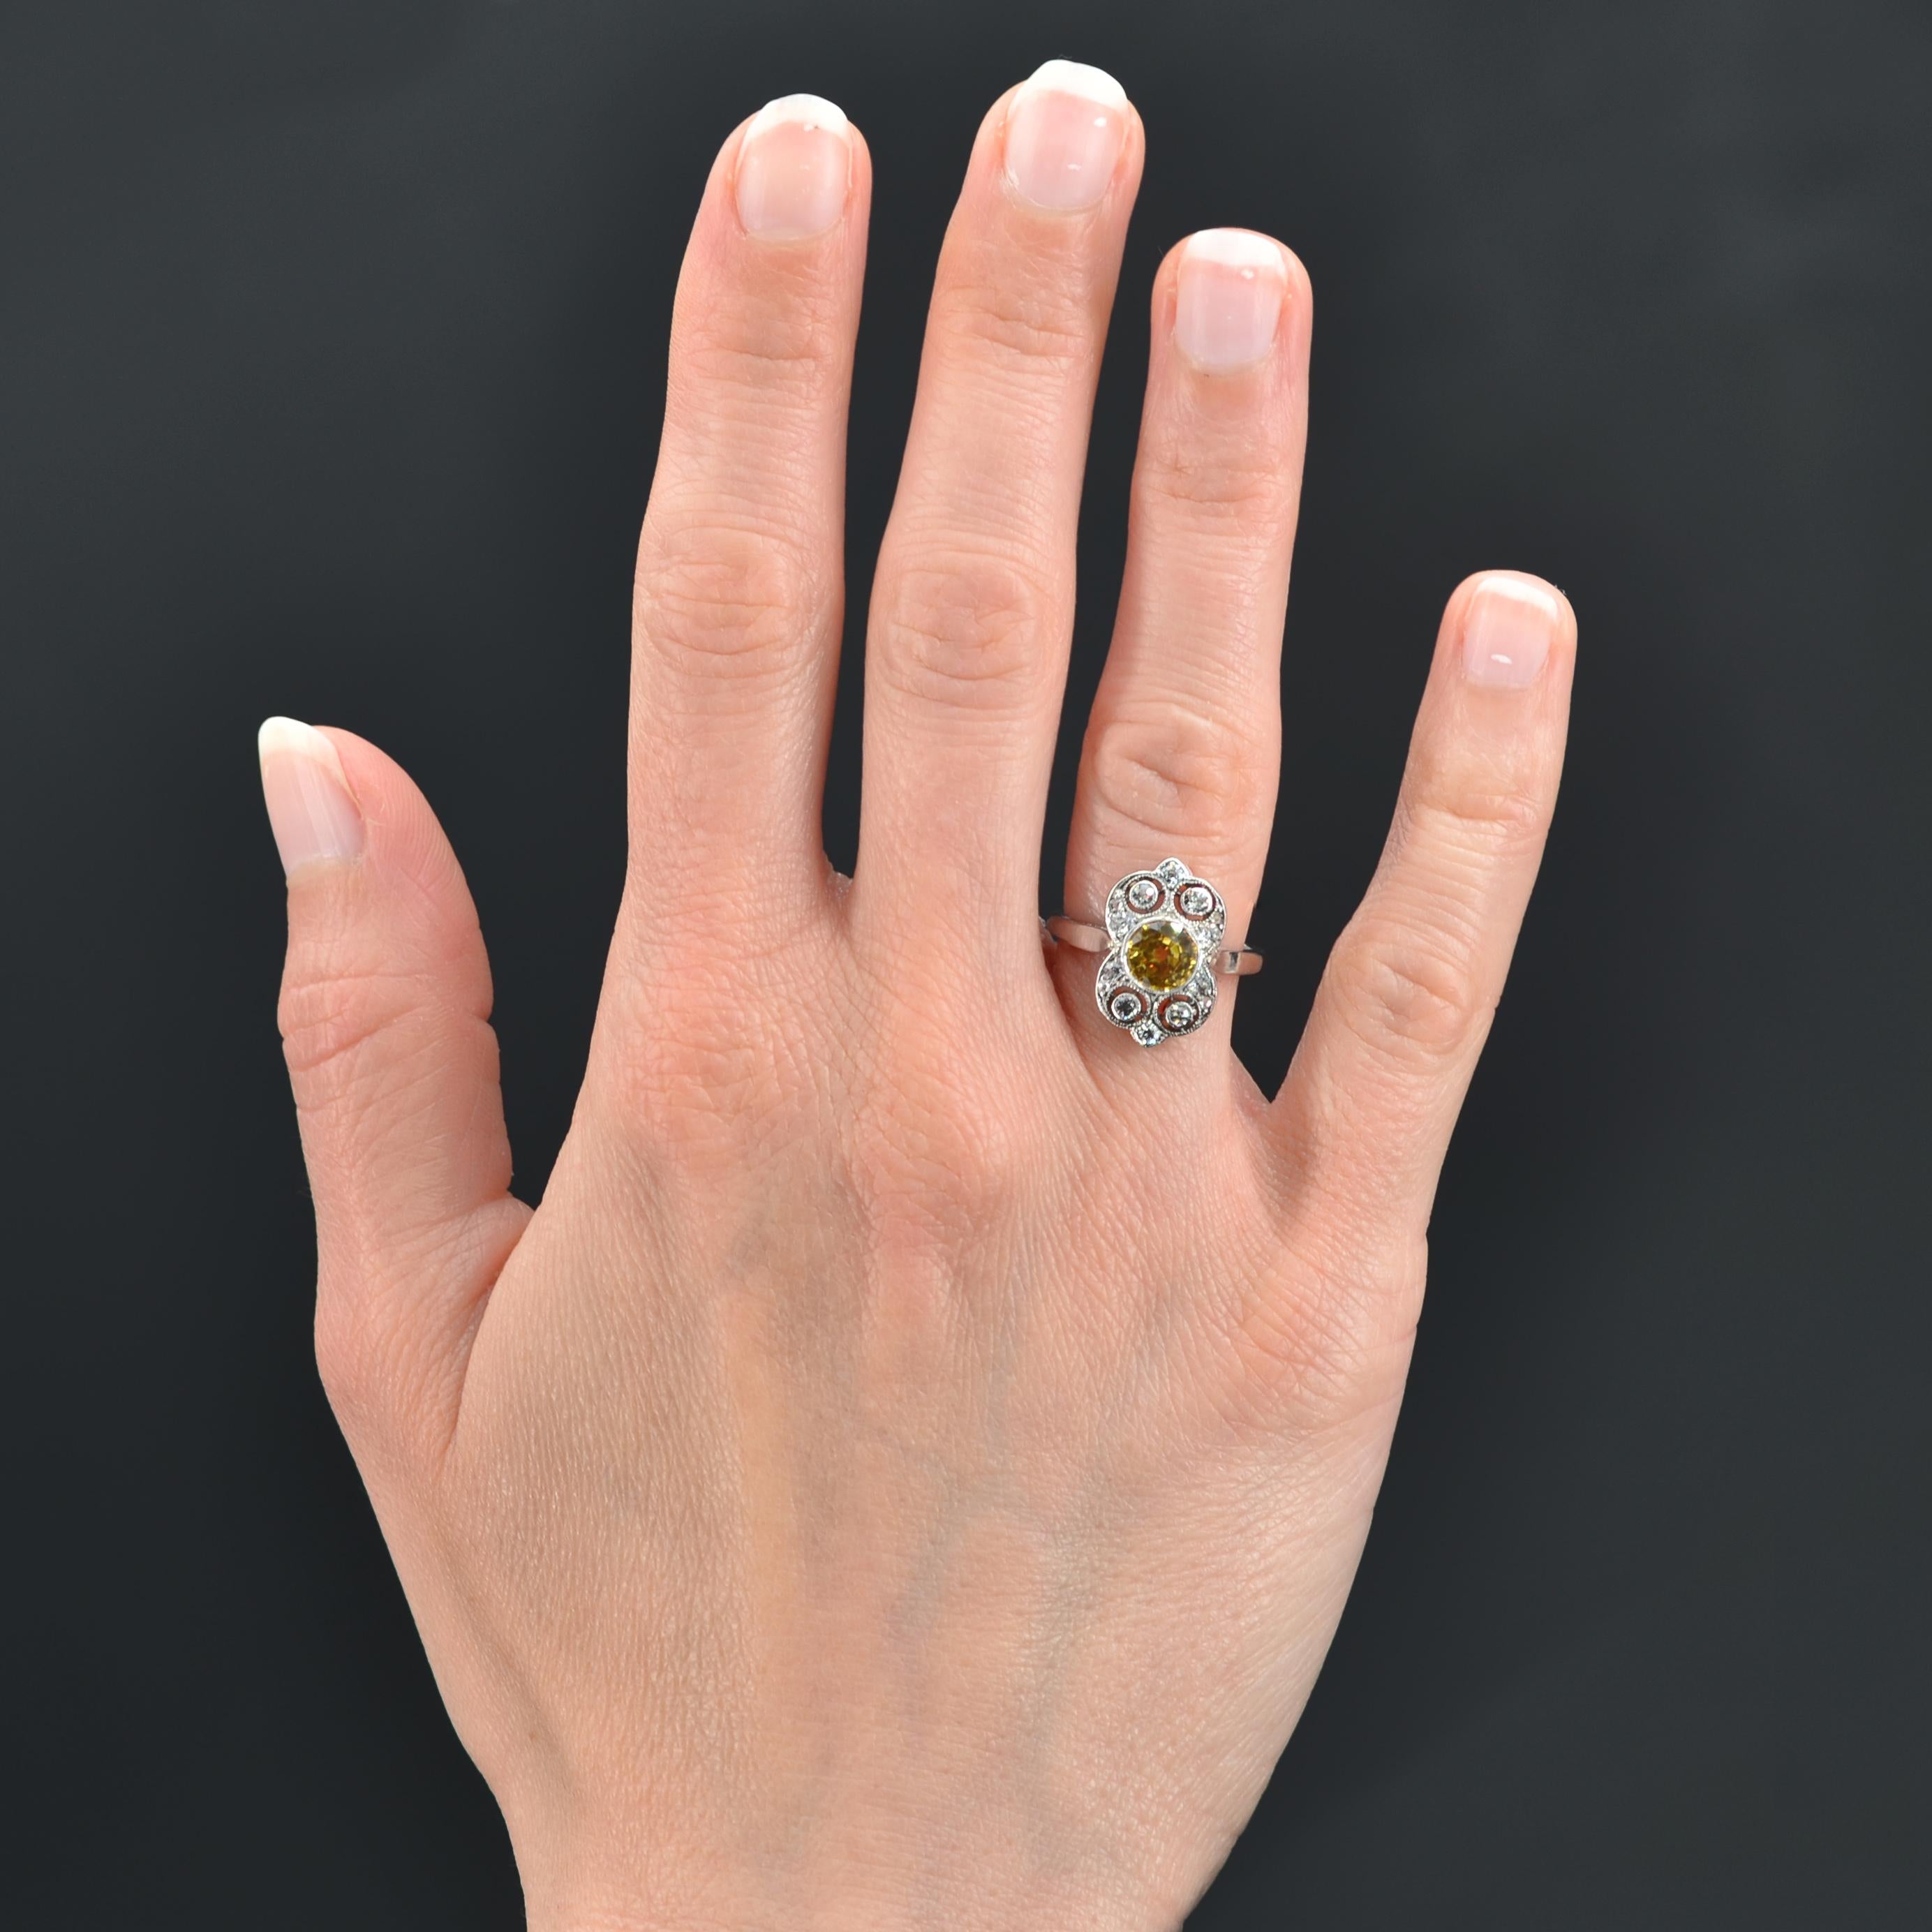 Ring aus Platin.
Charmanter Art-Déco-Ring, in der Mitte ein leuchtend gelber Saphir in einer durchbrochenen Verzierung, besetzt mit einem Diamanten im Antikschliff und Diamanten im Rosenschliff in verschiedenen Größen.
Gewicht des Saphirs: ca. 1,17